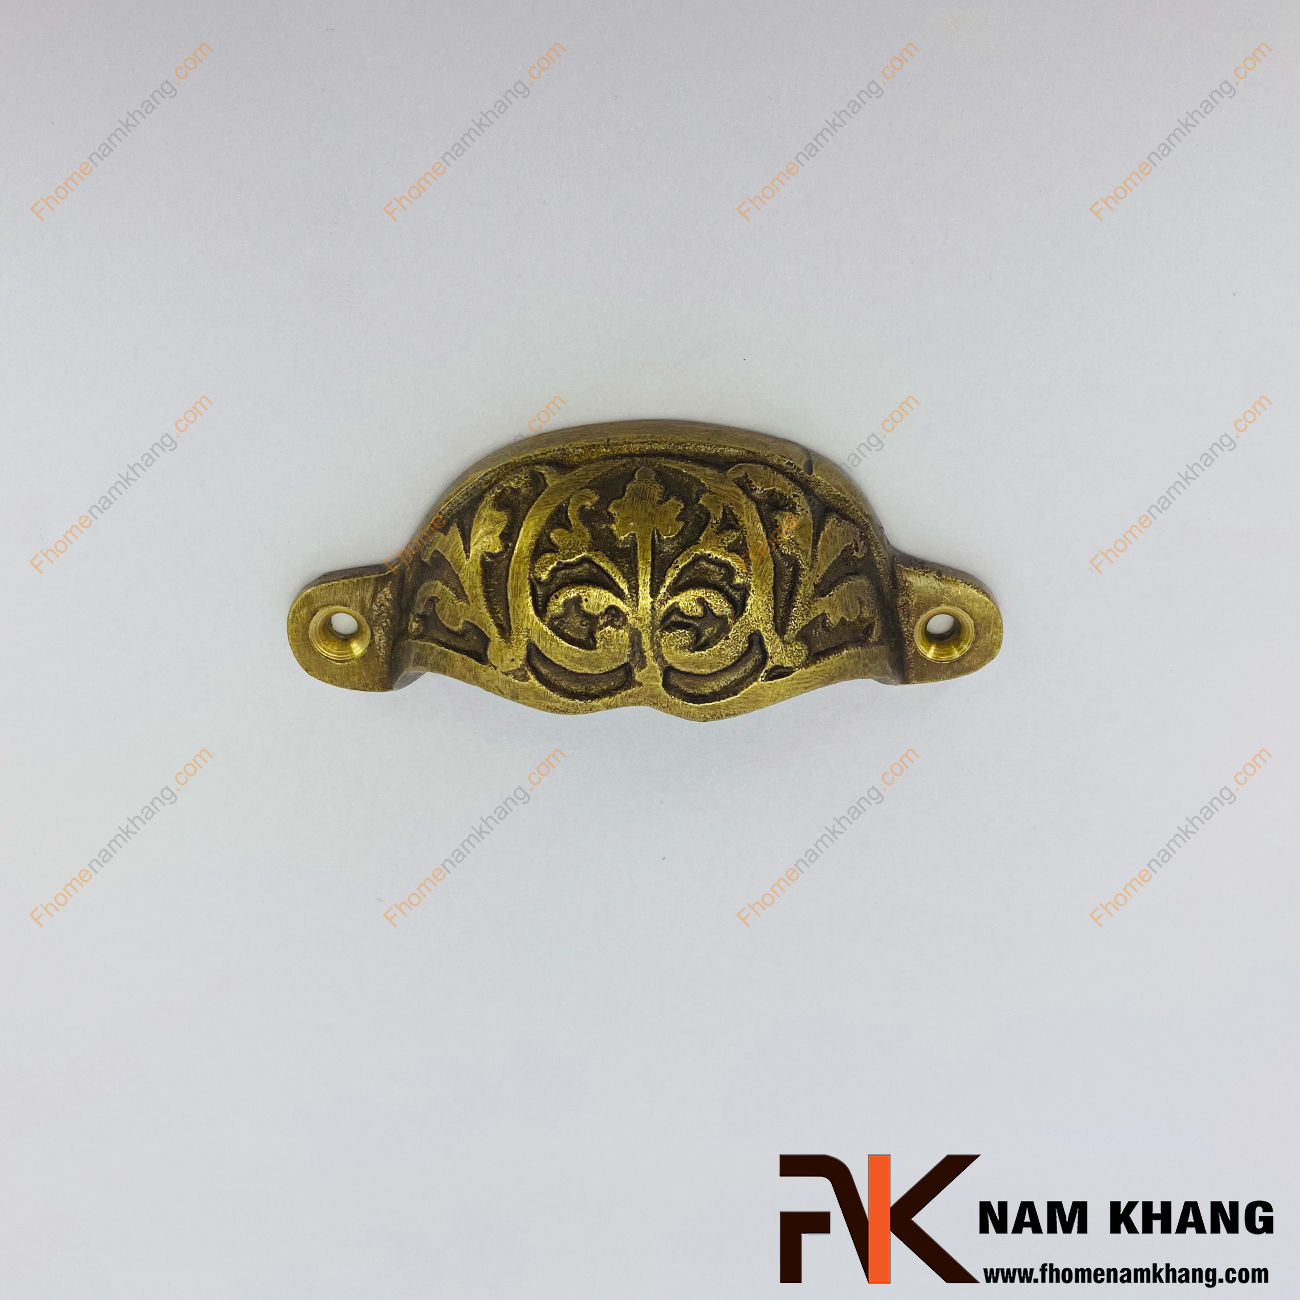 Tay nắm tủ đồng cổ NKD008-C có thiết kế đậm chất hoàng gia Á ĐÔNG với kiểu dáng lá mỏng uốn cong và được khắc họa các đường nét đối xứng.